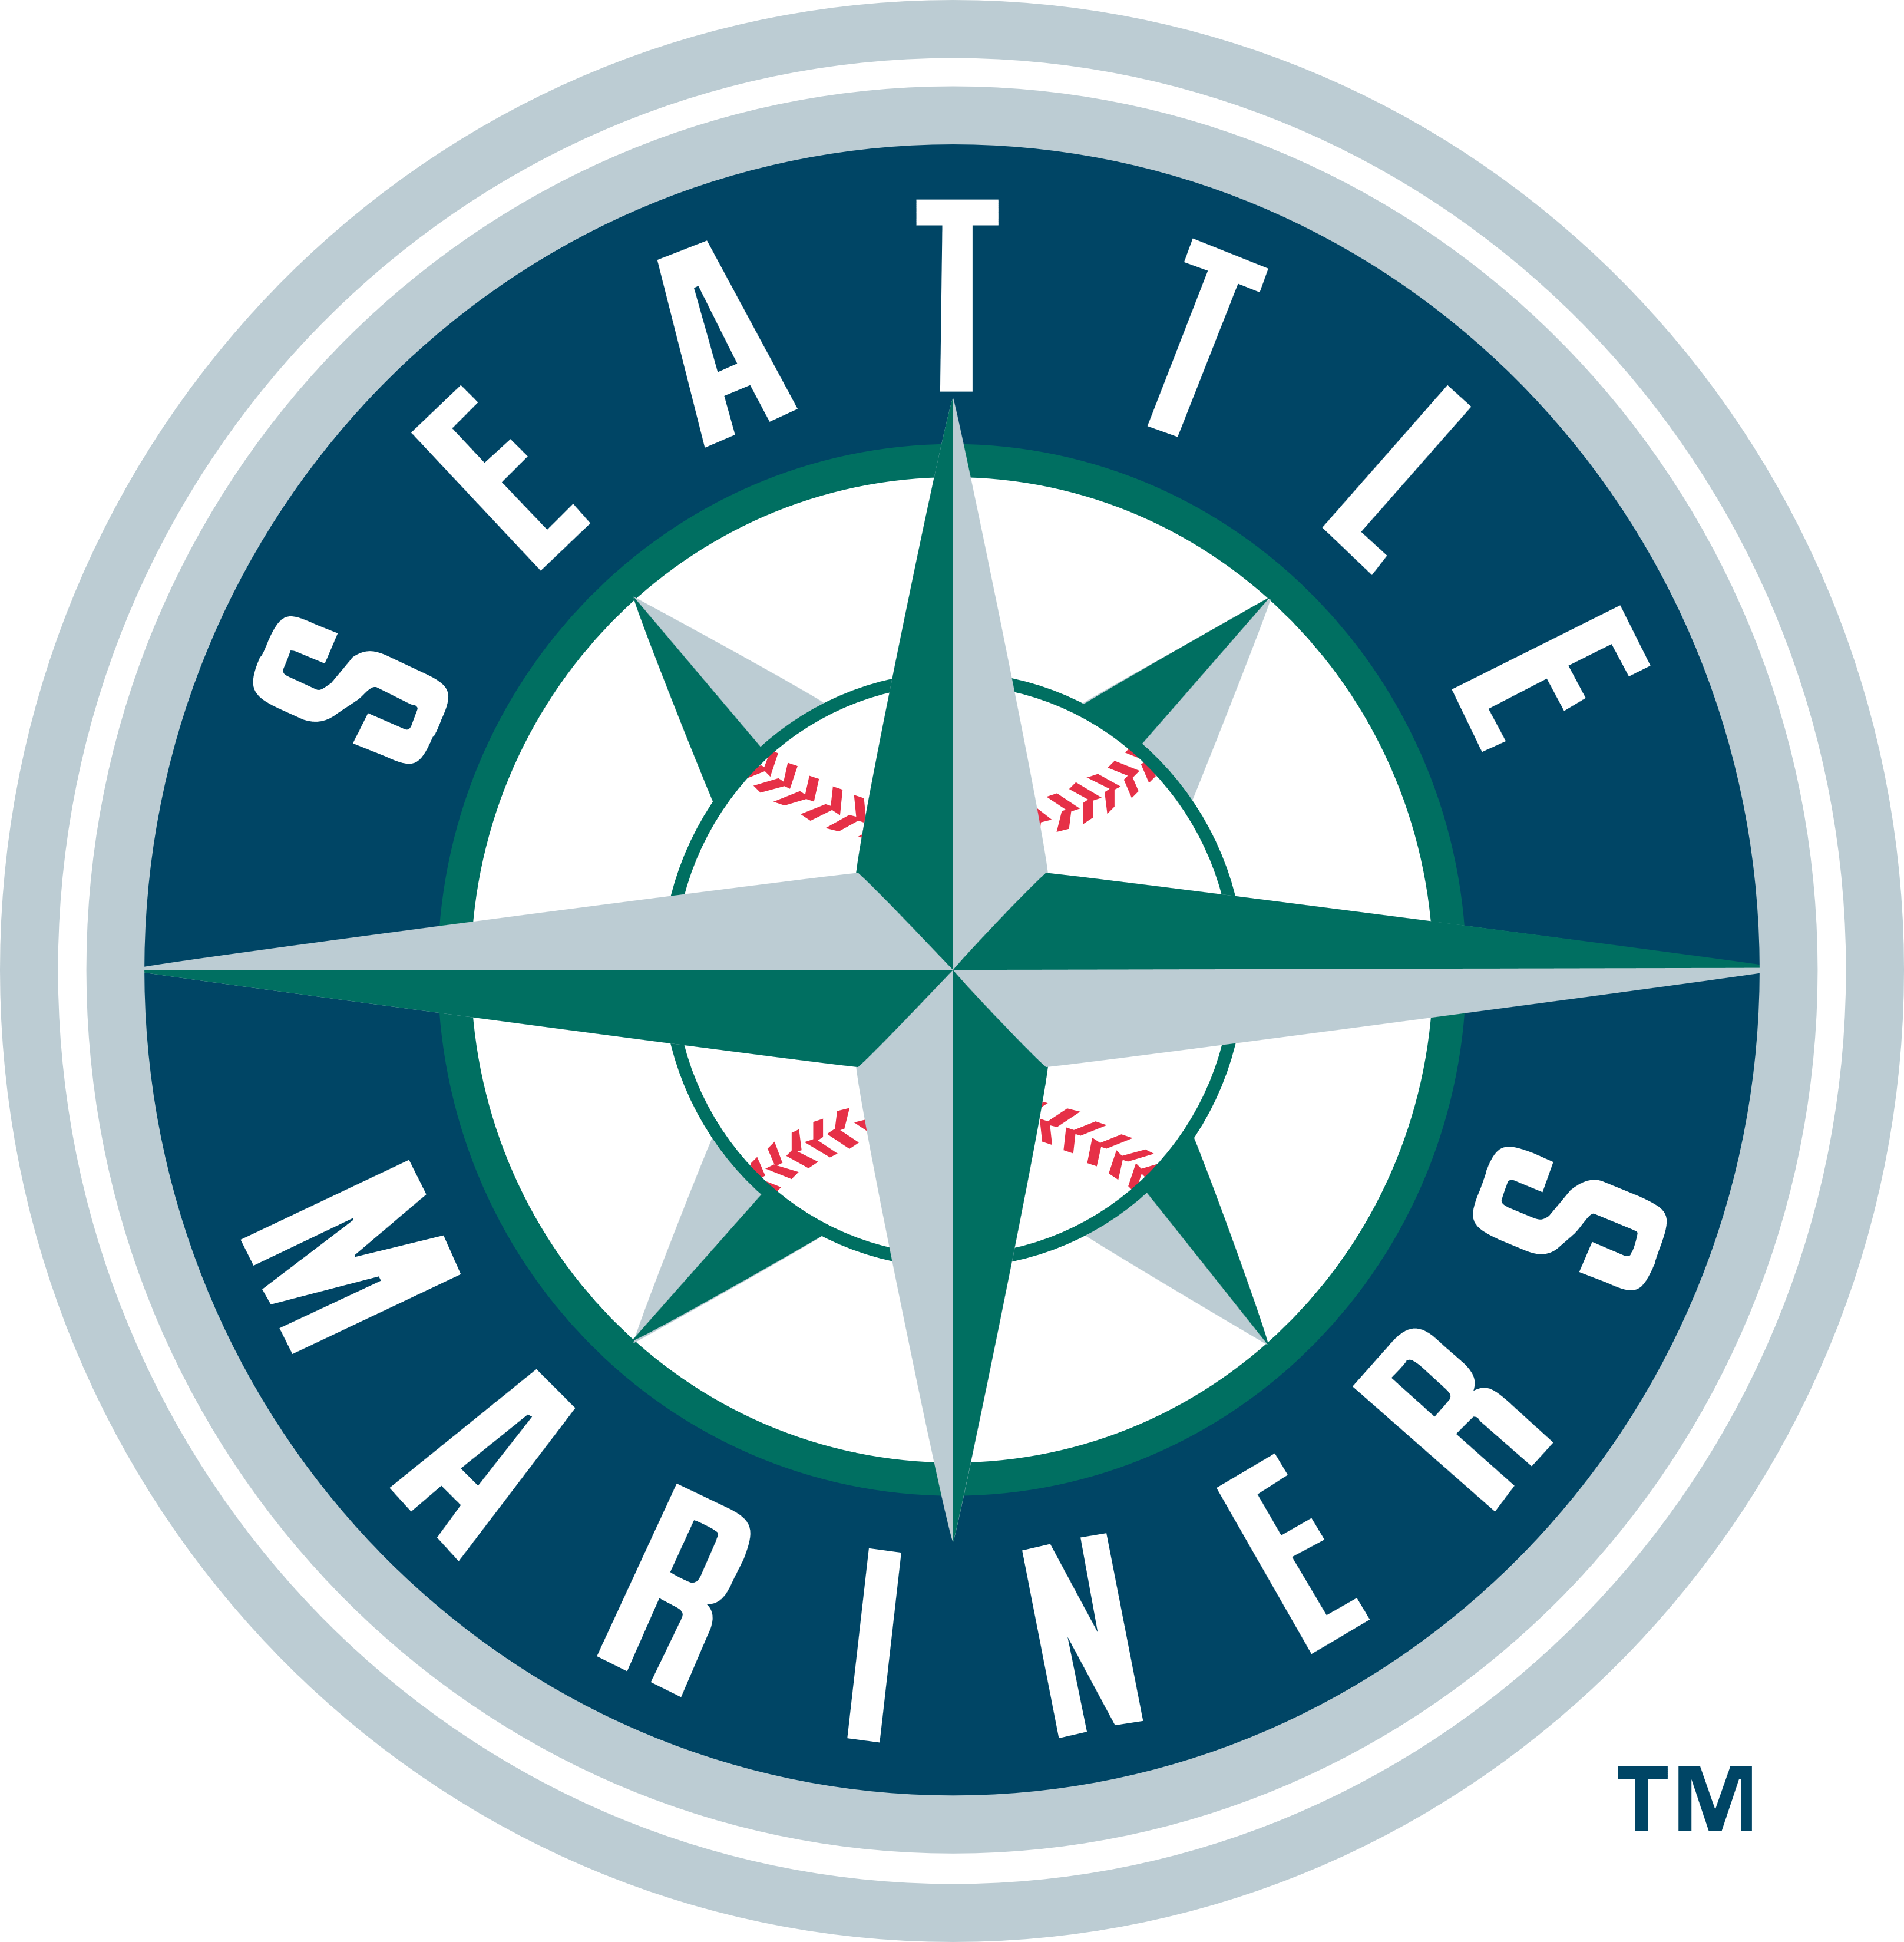 Seattle Mariners Logos Download